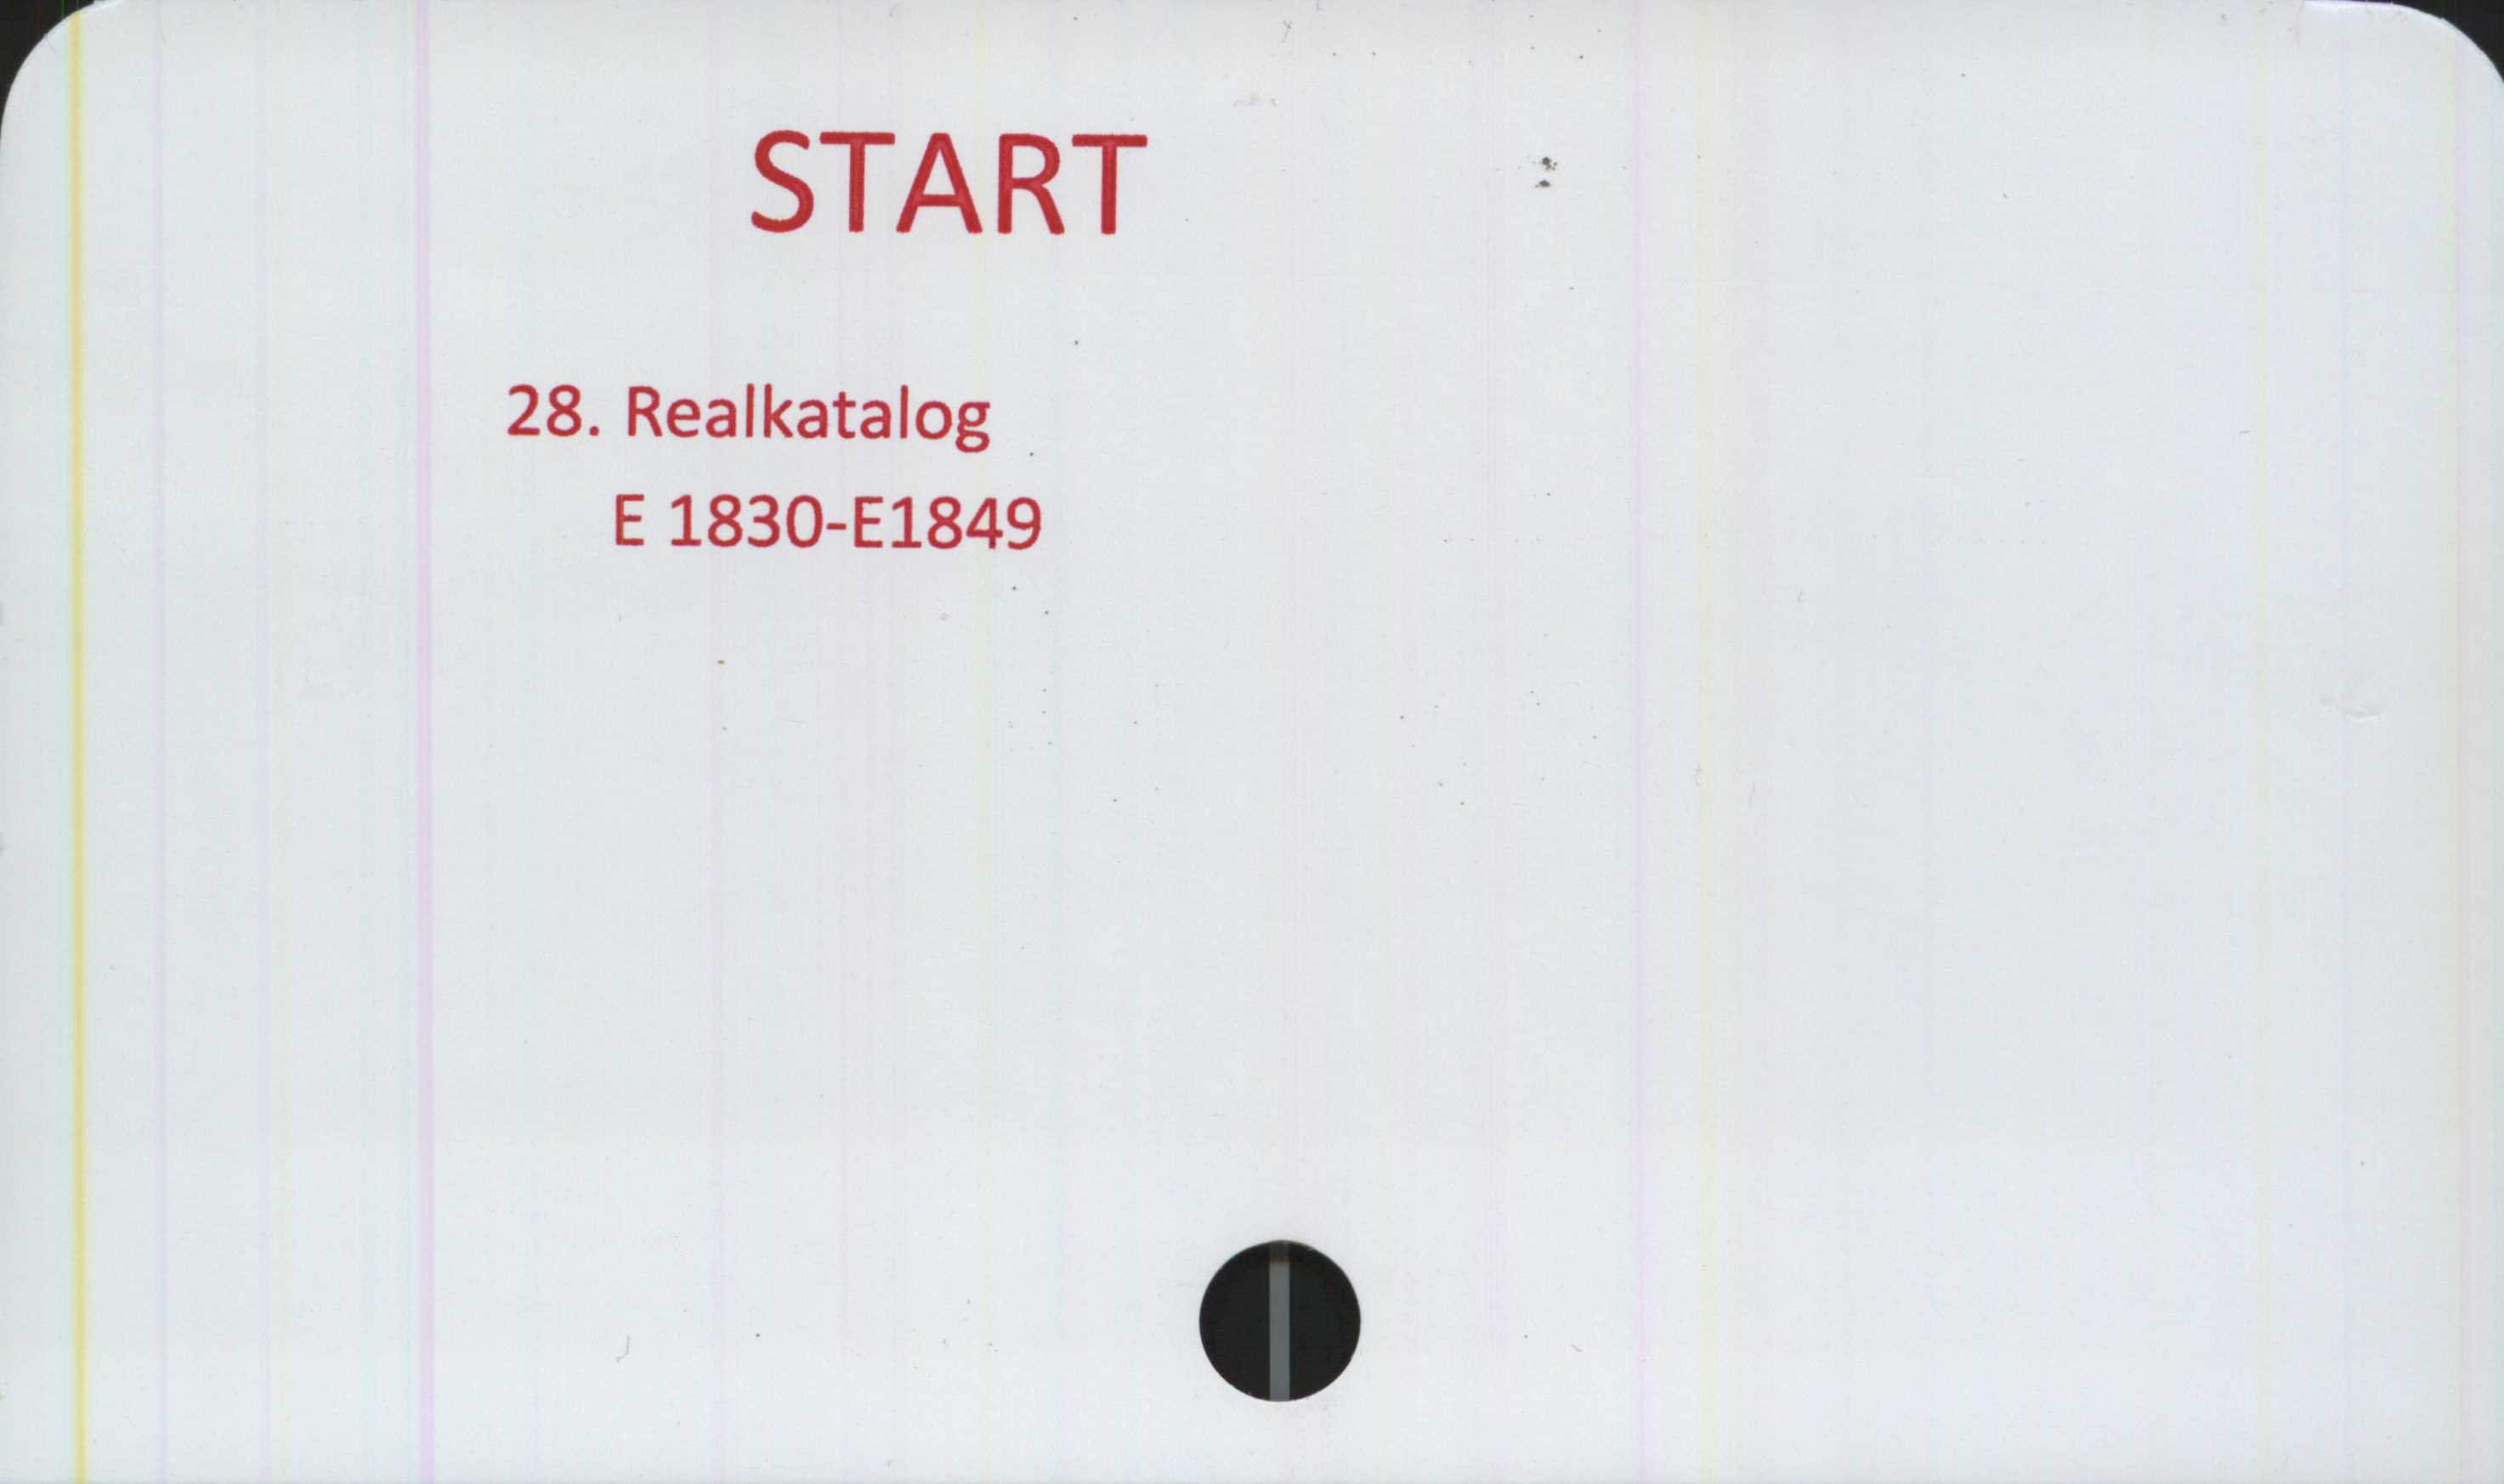  ﻿START

28. Realkatalog
E1830-E1849